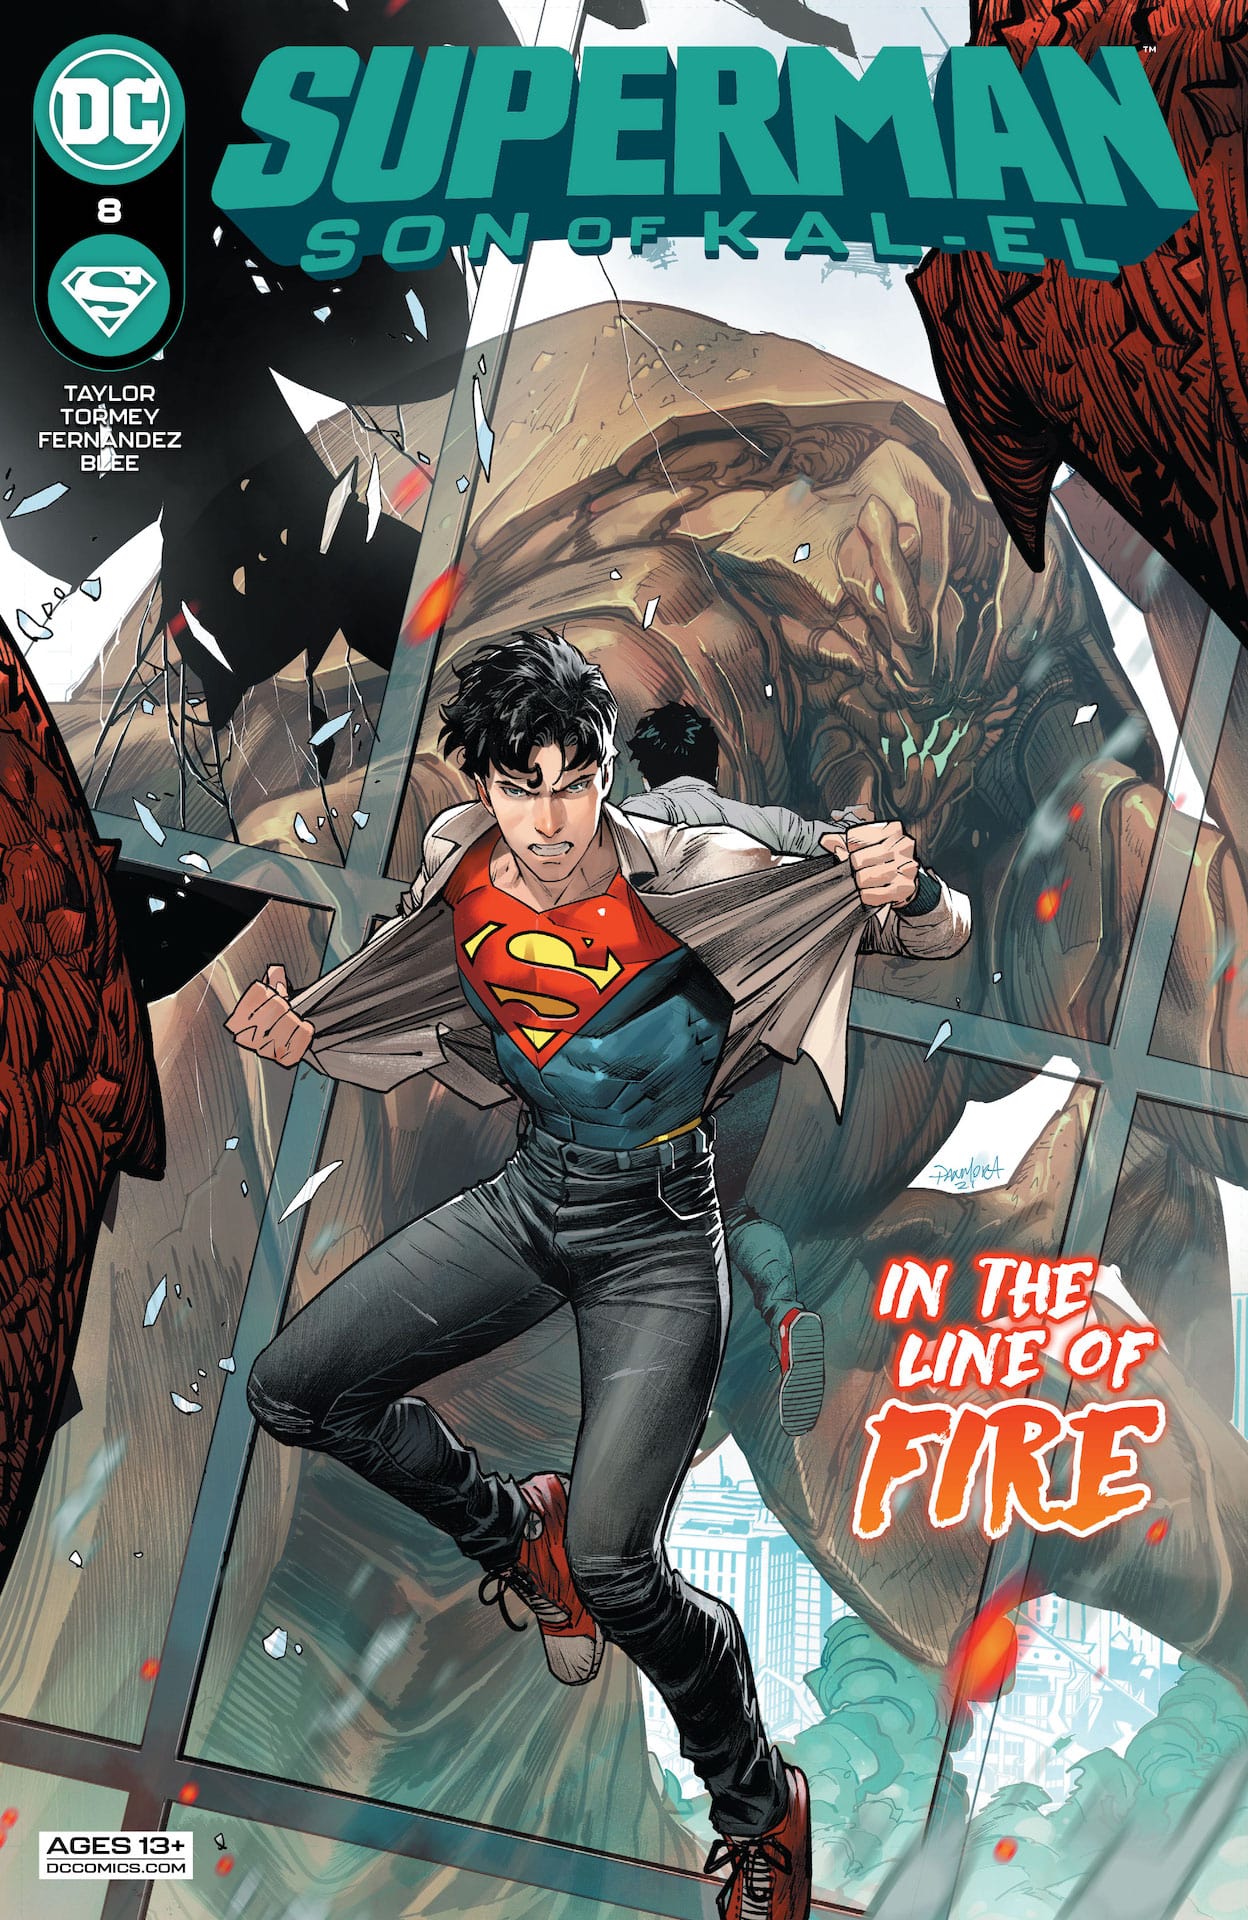 Superman: Son of Kal El #8